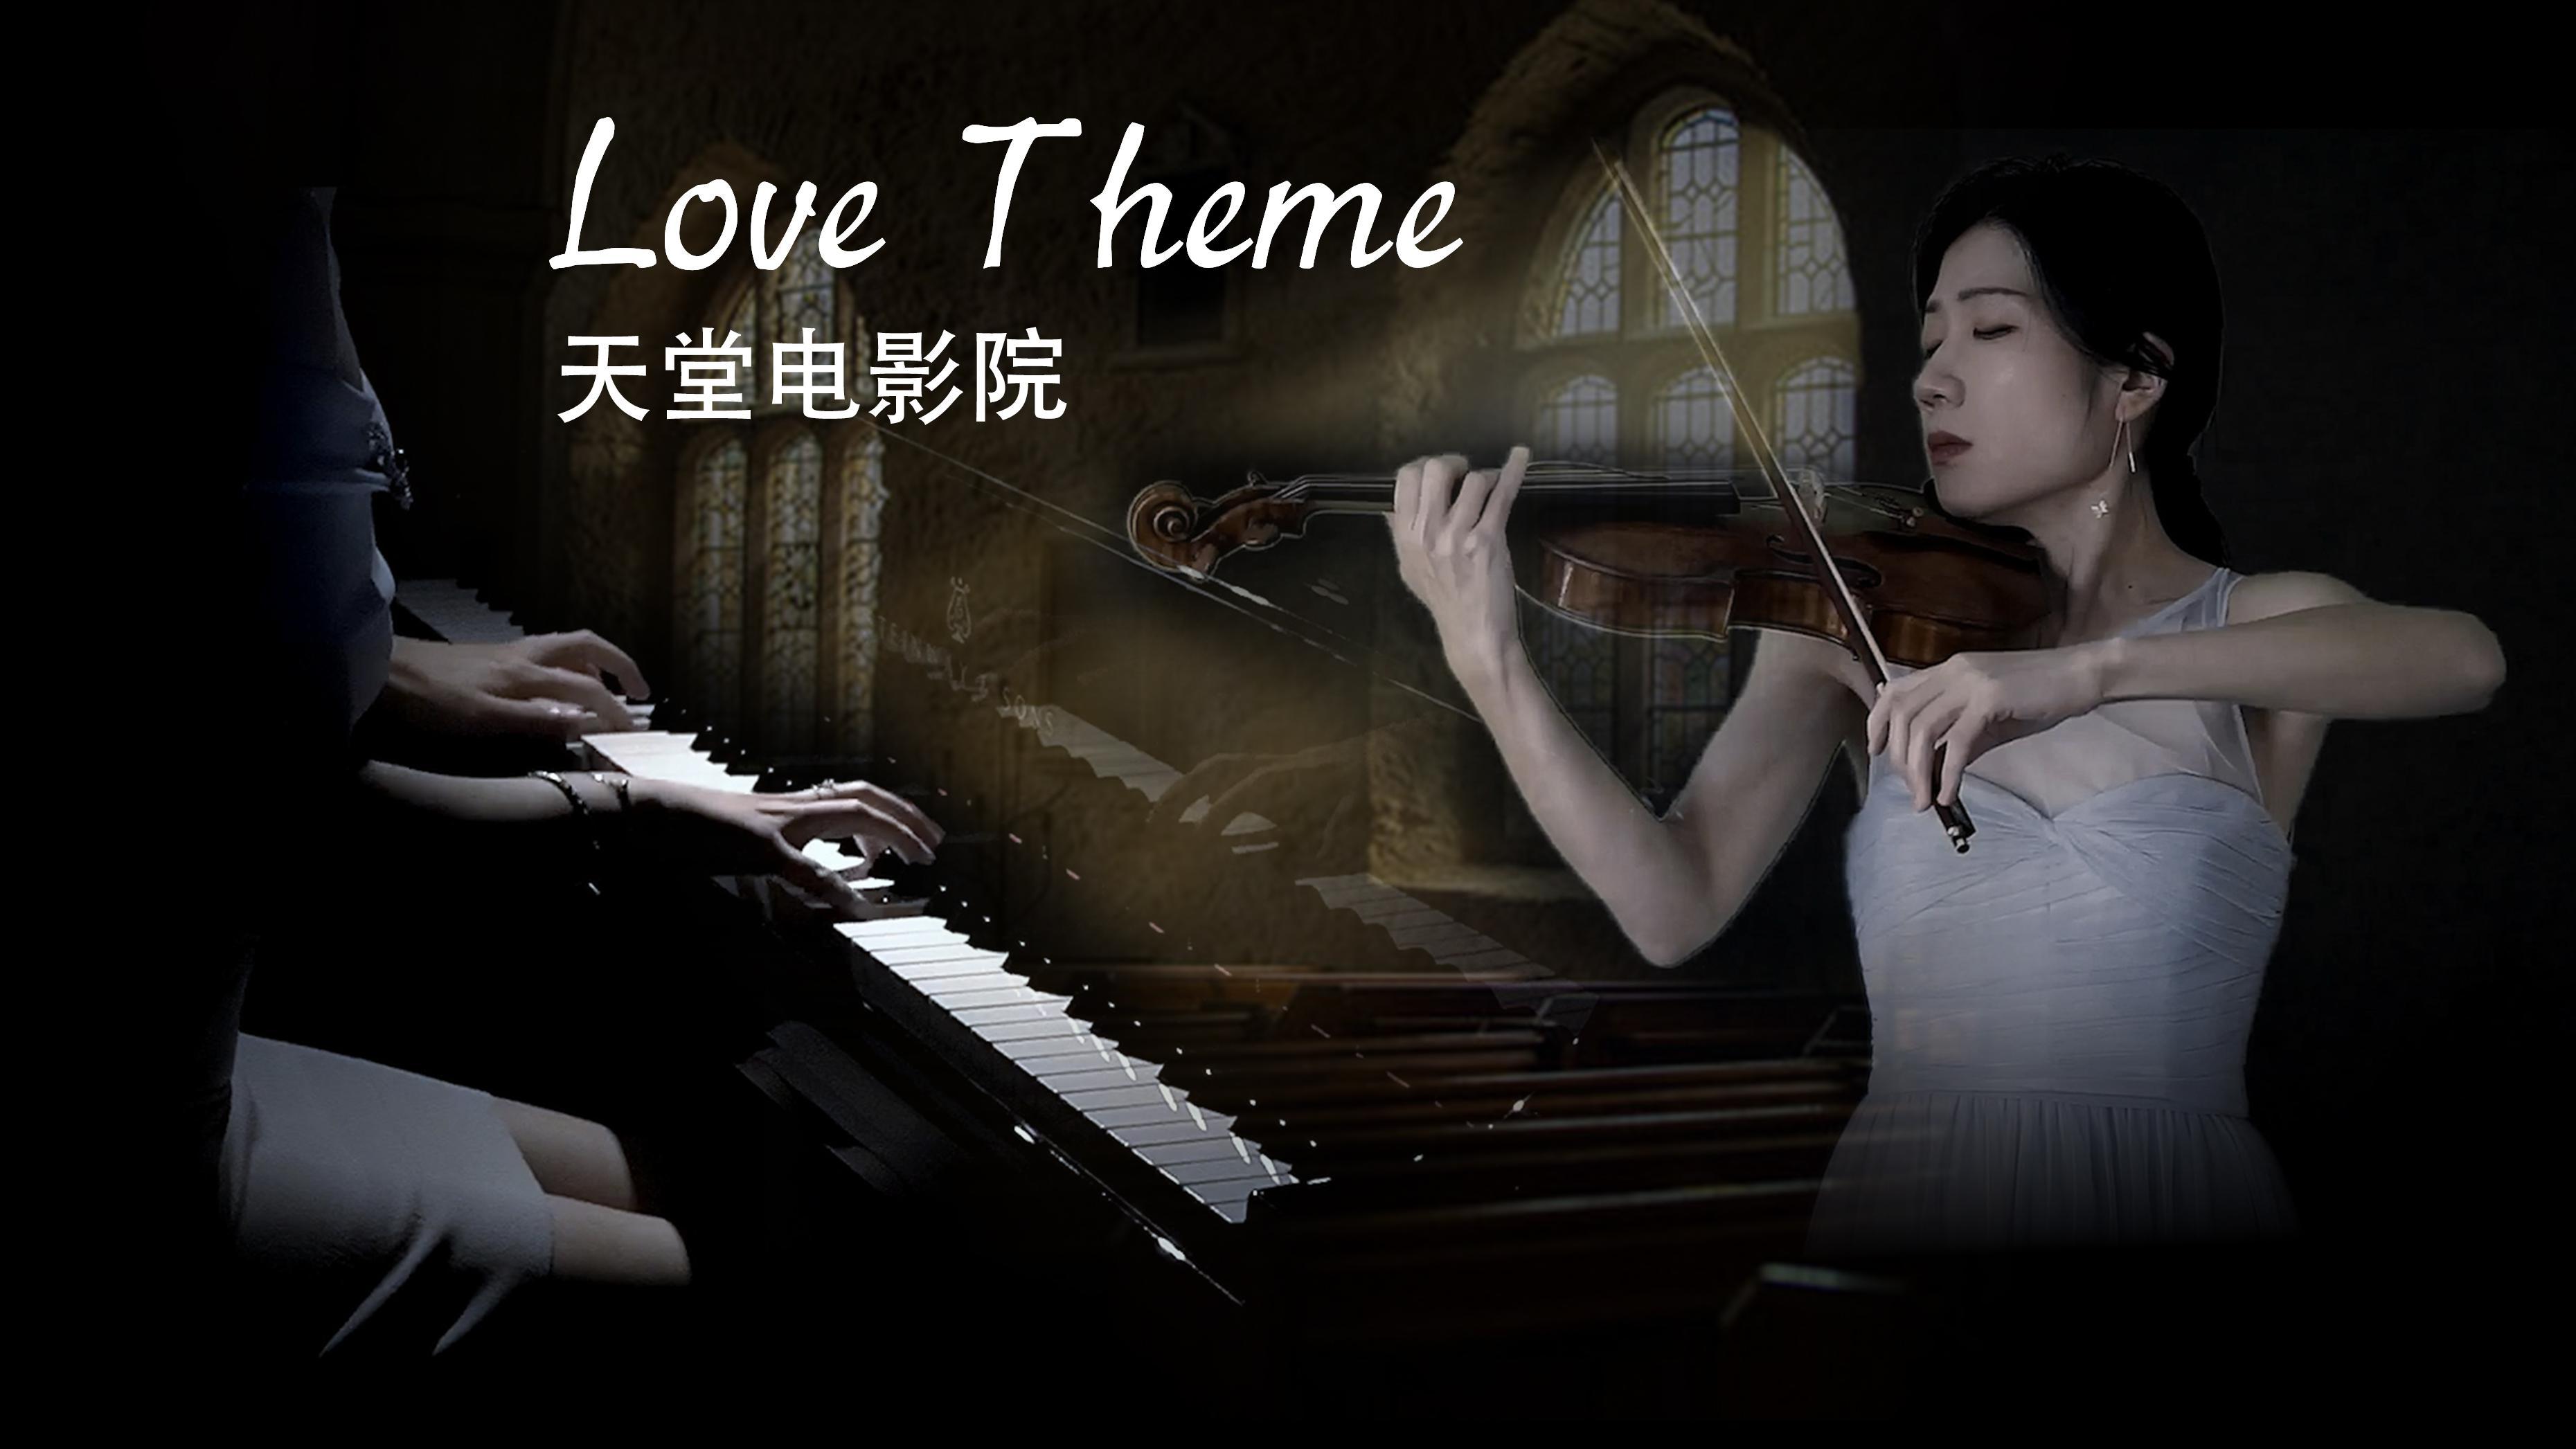 浅绯色的喵 - 百转千回的《天堂电影院-Love theme》钢琴&小提琴版